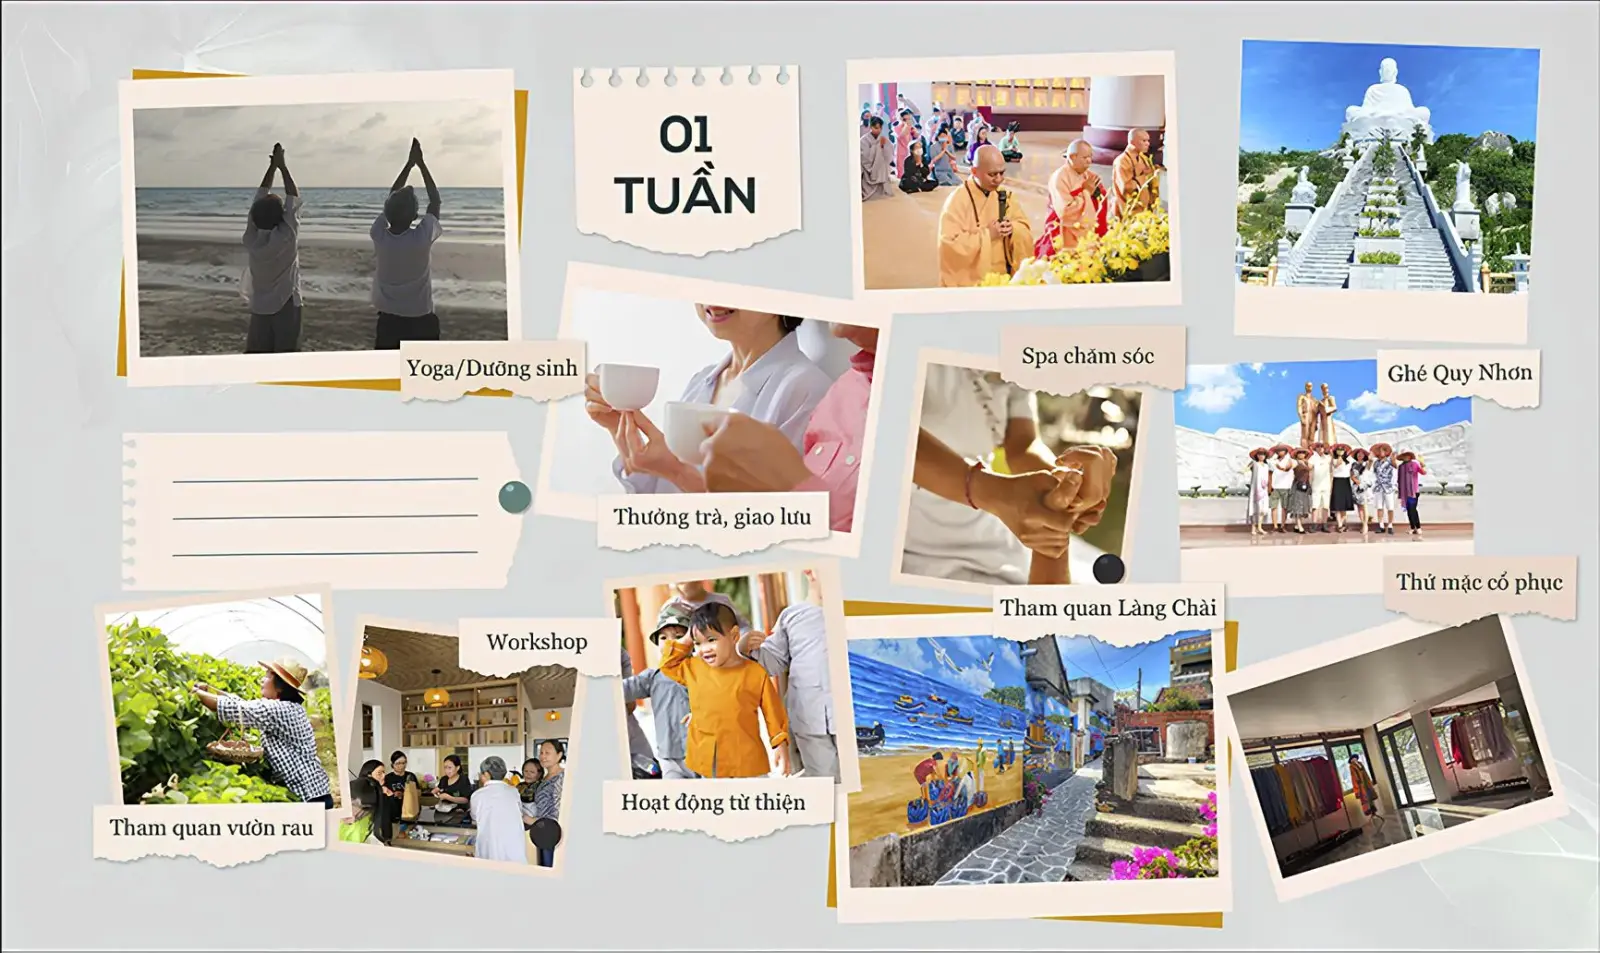 Chương trình du lịch chữa lành: Hành trình An Yên - Tái tạo năng lượng bản thân tại Ohana Village - Bình Định